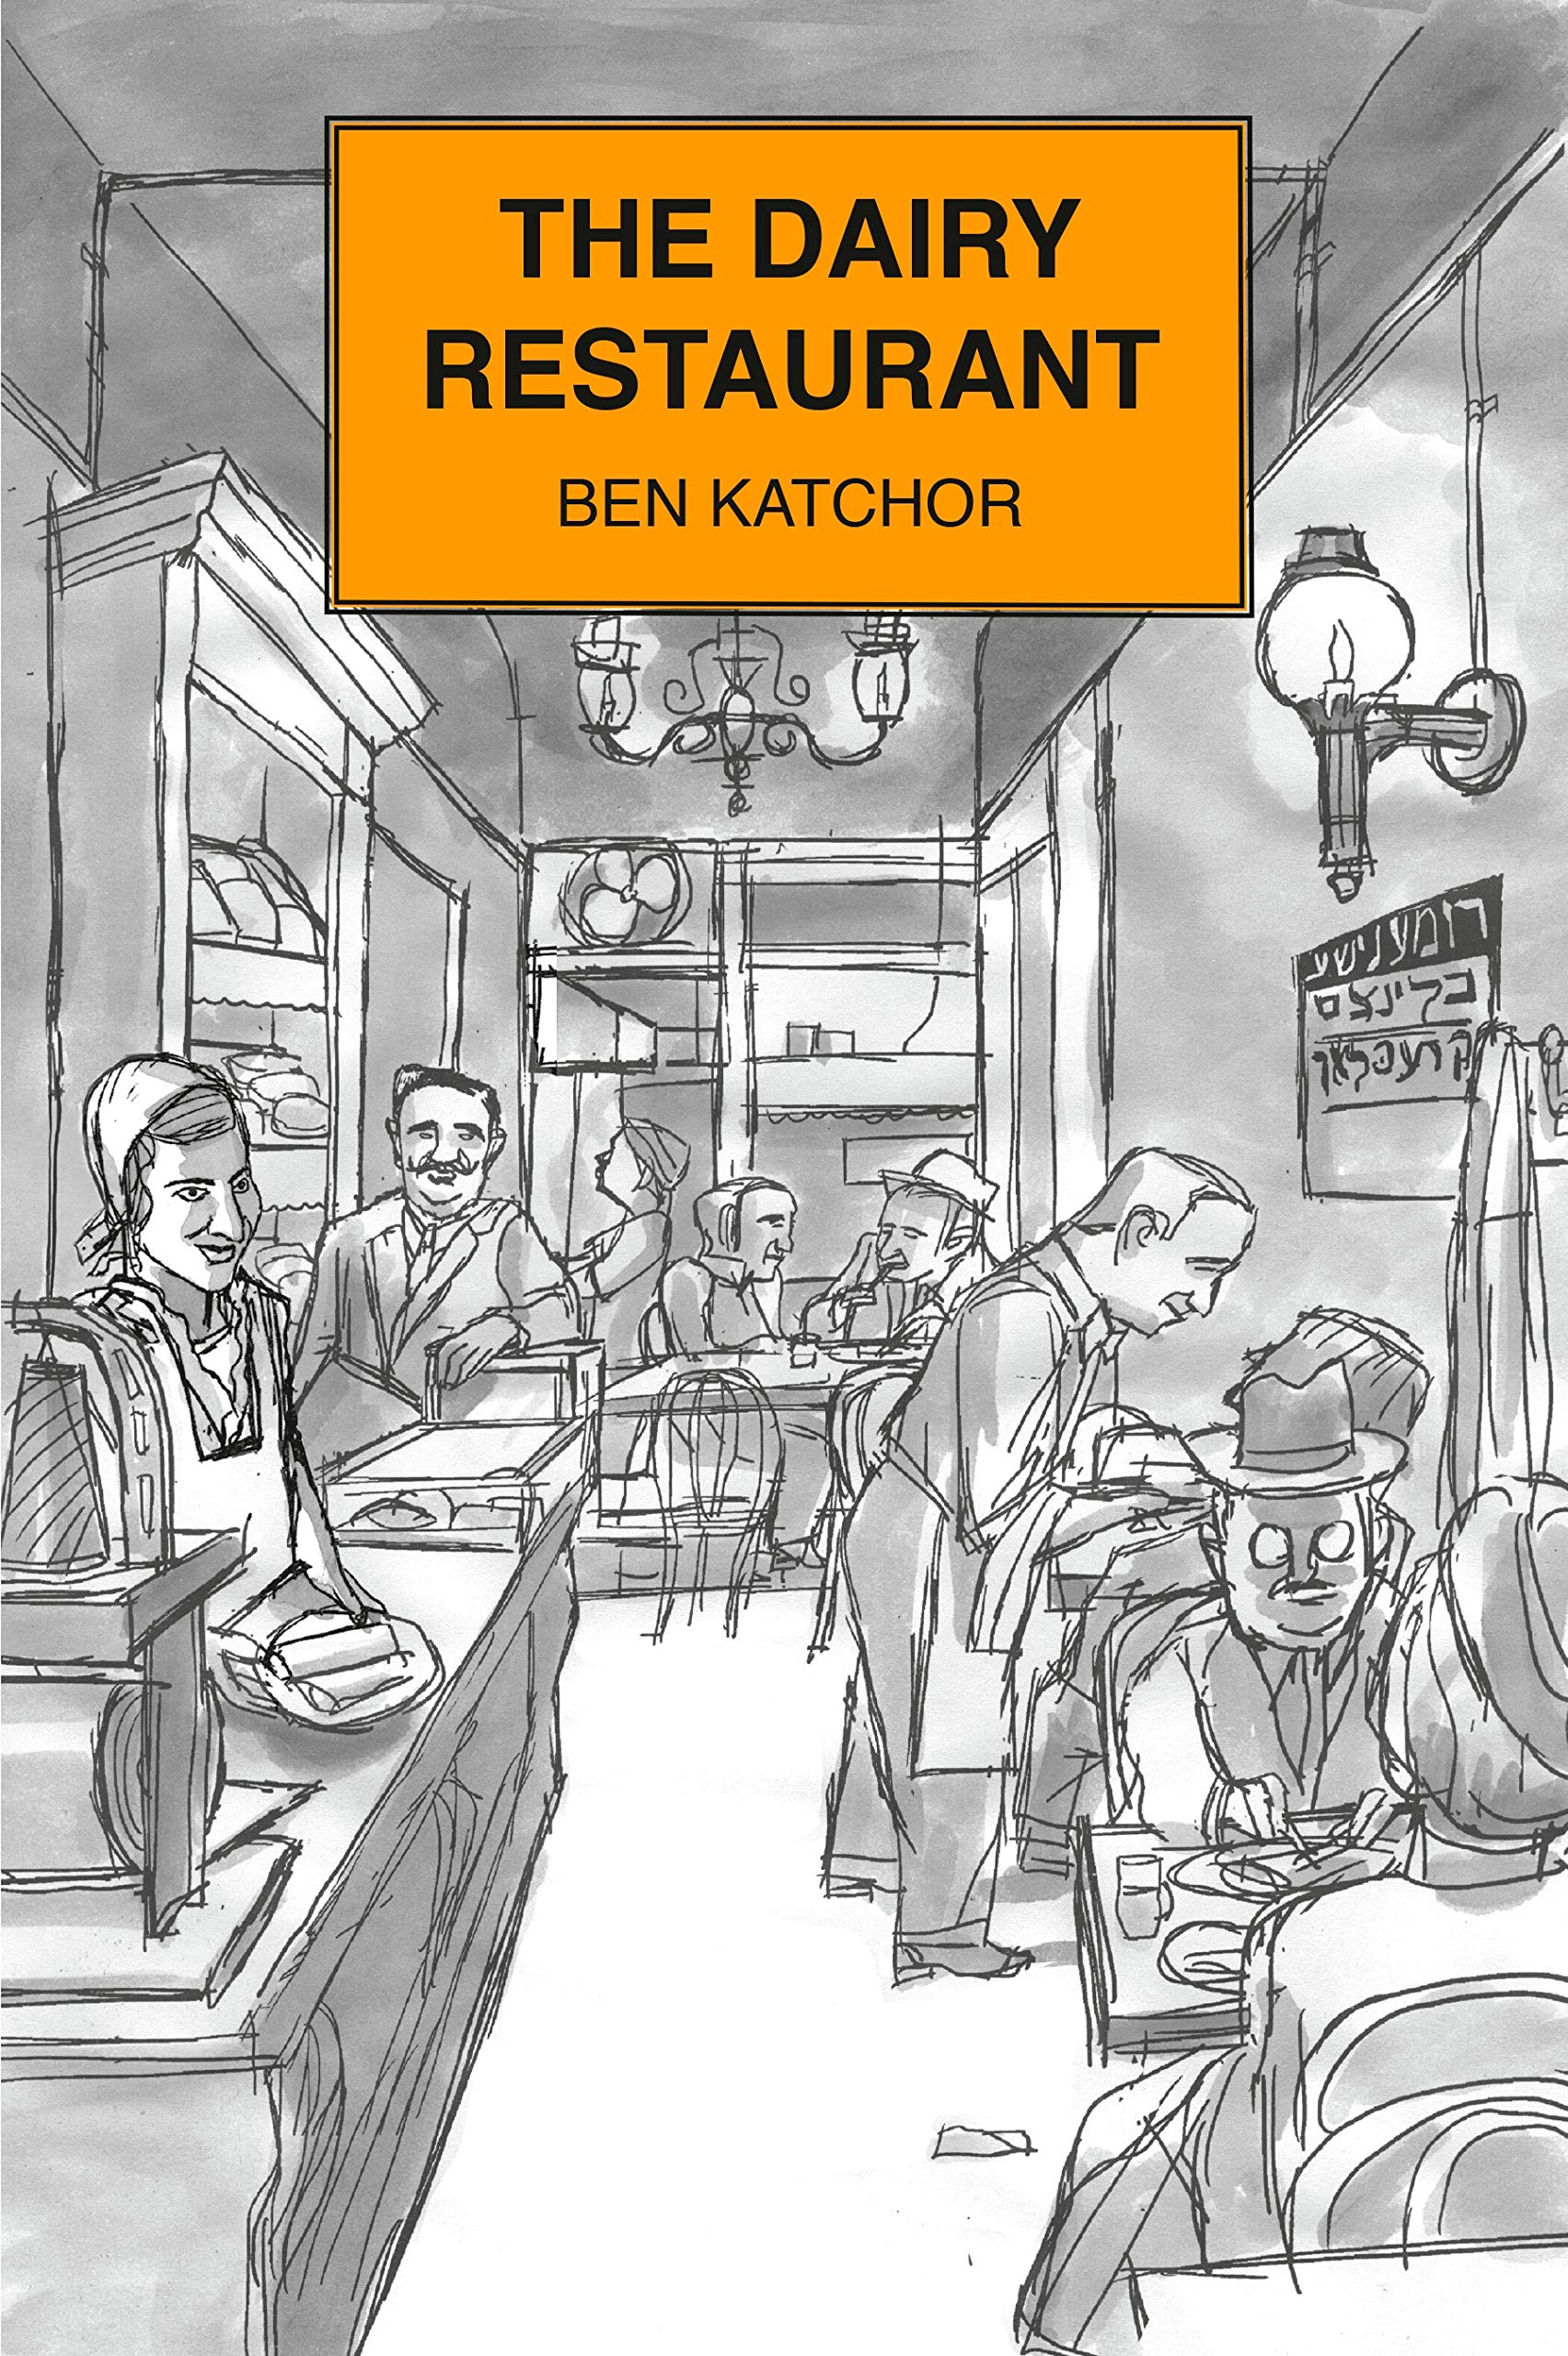 The Dairy Restaurant (Ben Katchor)